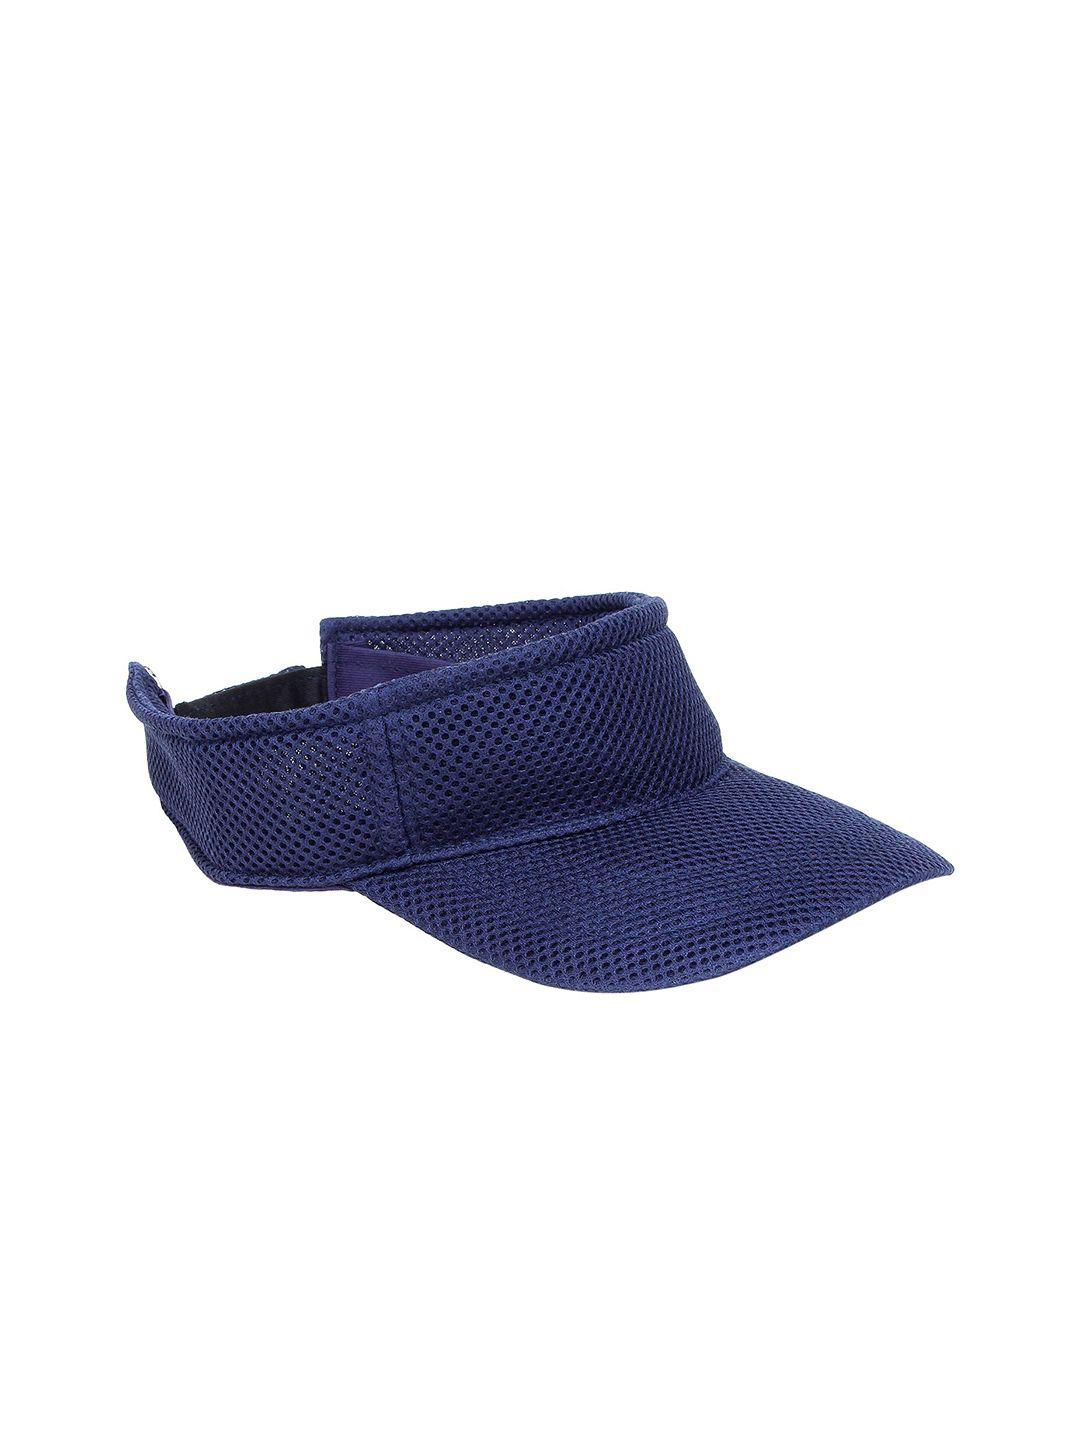 zacharias unisex purple visor cap